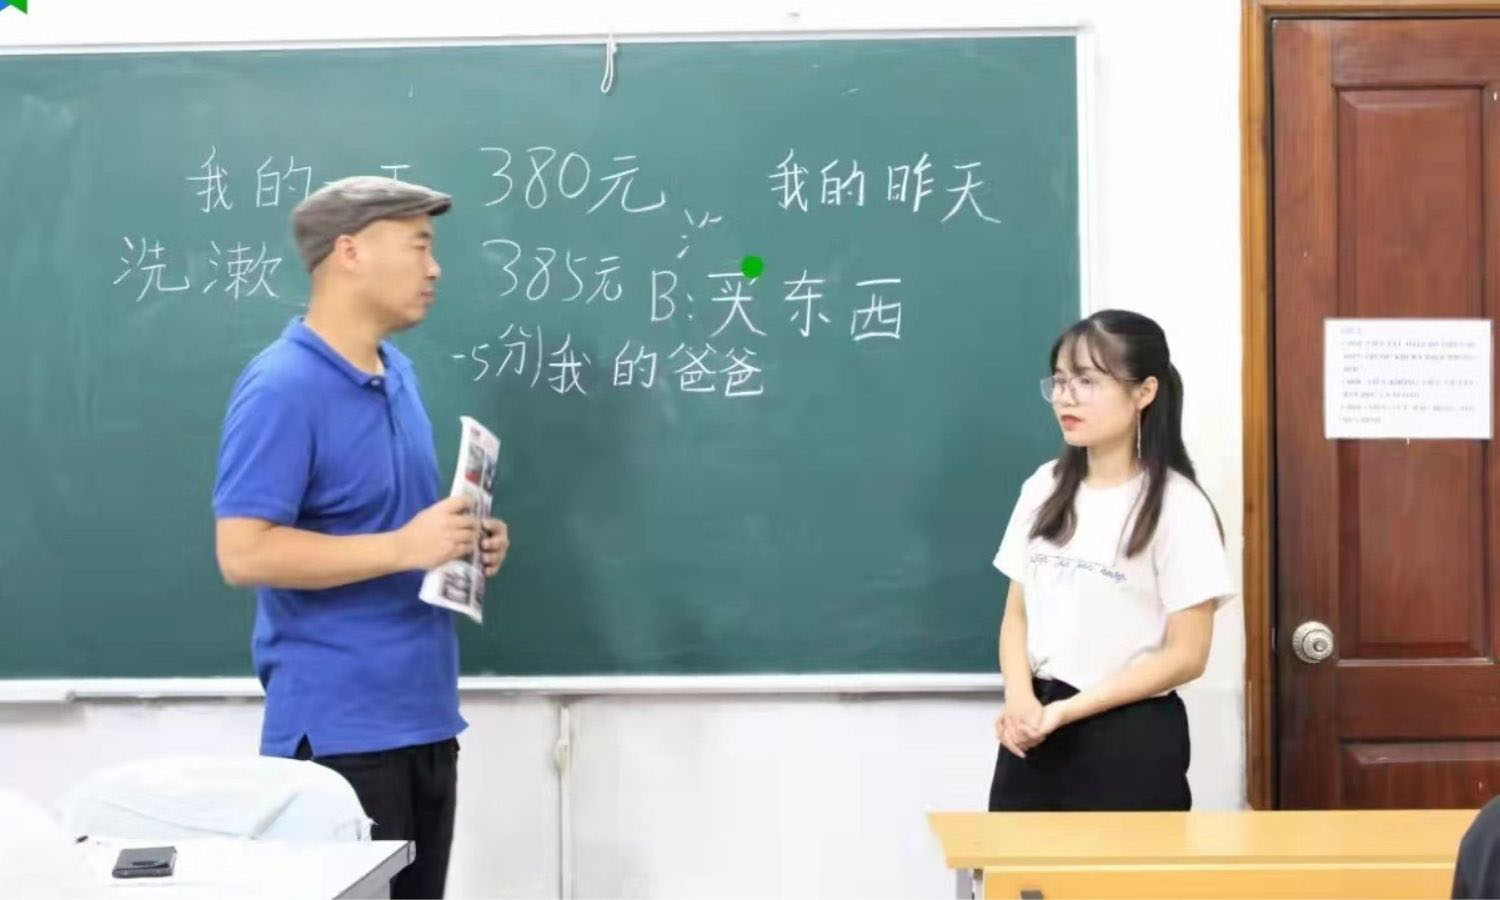 Trung tâm tiếng Trung Đại học Quốc gia Hà Nội - Trung tâm dạy tiếng Trung hàng đầu tại Hà Nội